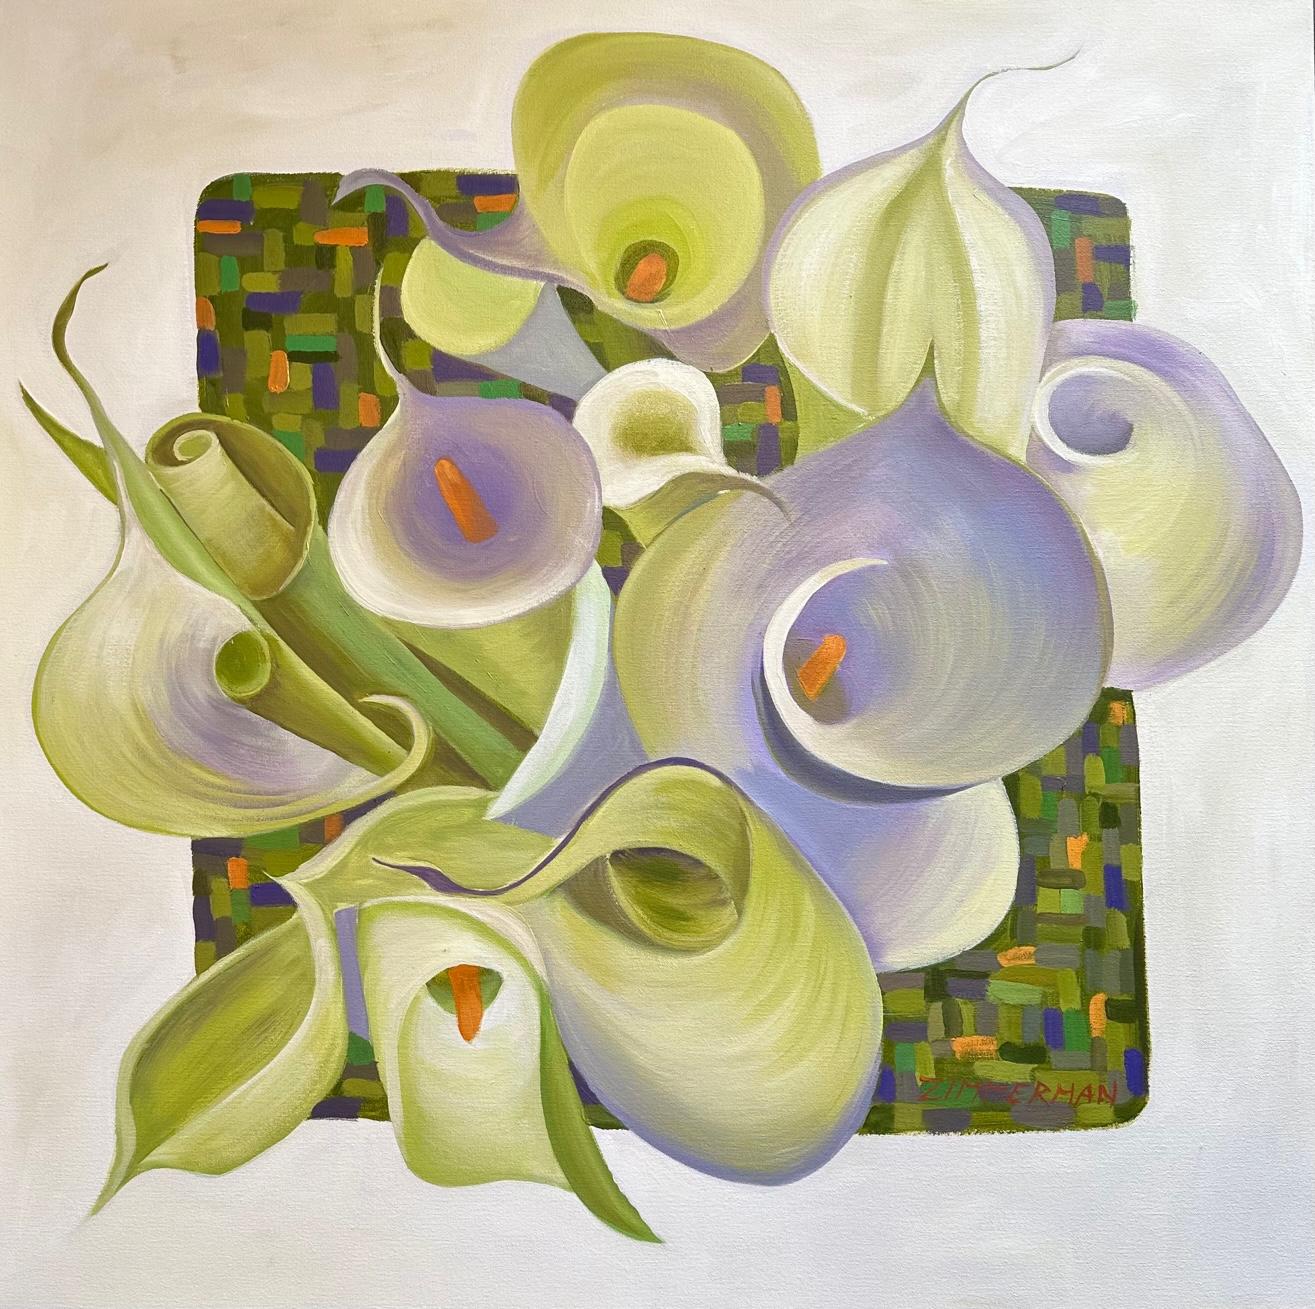 Eingeschlossen und doch expandierend" - Calla Lily Flowers - Marc Zimmerman

Dieses Meisterwerk ist in der Zimmerman Gallery, Carmel CA, ausgestellt.

ÜBER DEN KÜNSTLER
Marc Zimmerman ist ein visionärer Künstler, dessen Kreationen eine fesselnde